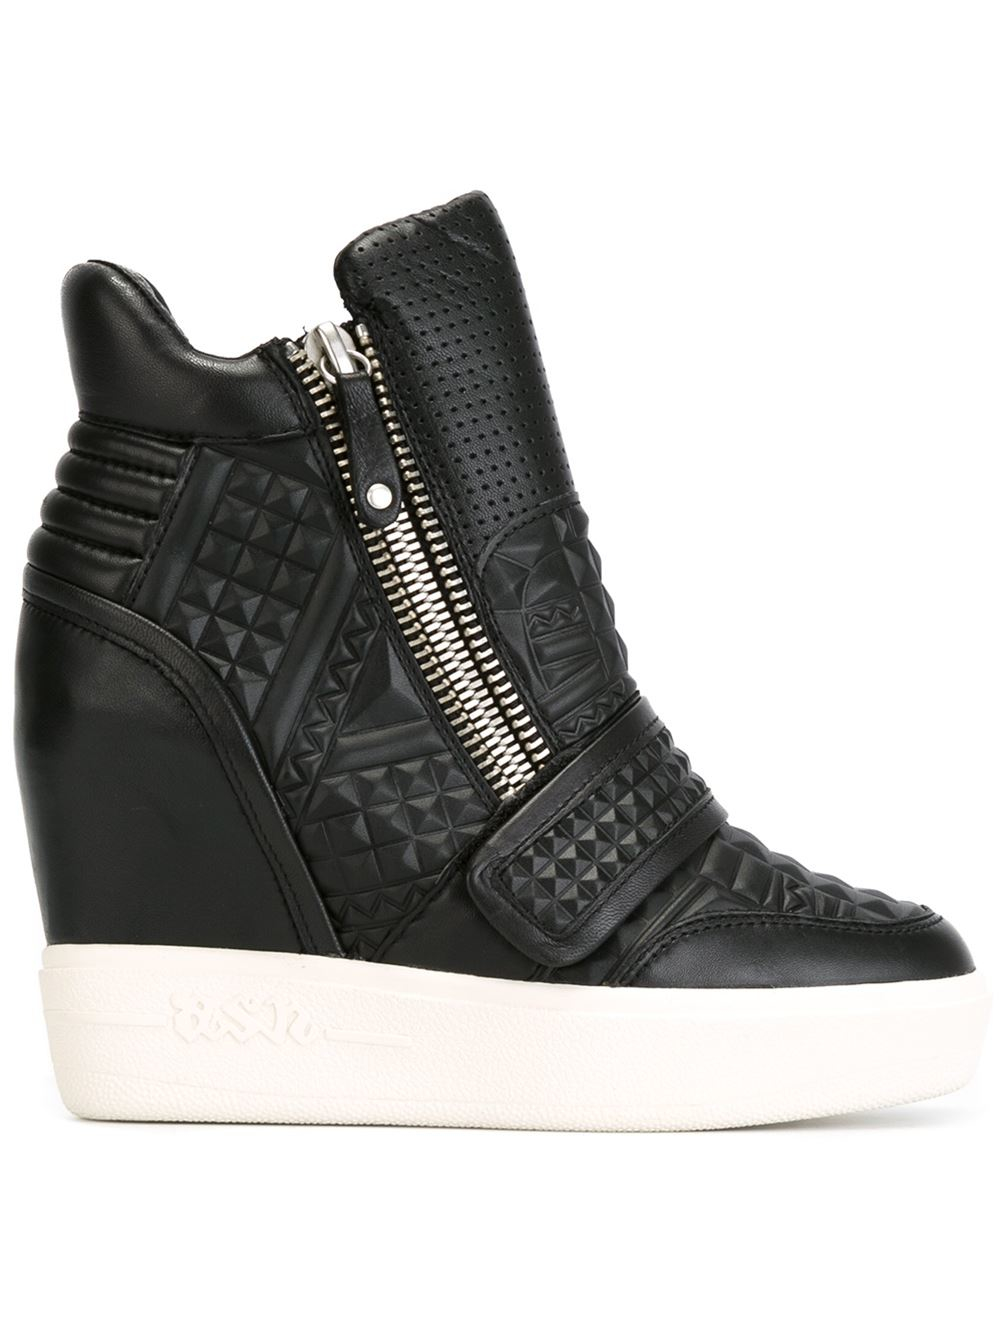 Ash Wedge Sneakers in Black | Lyst